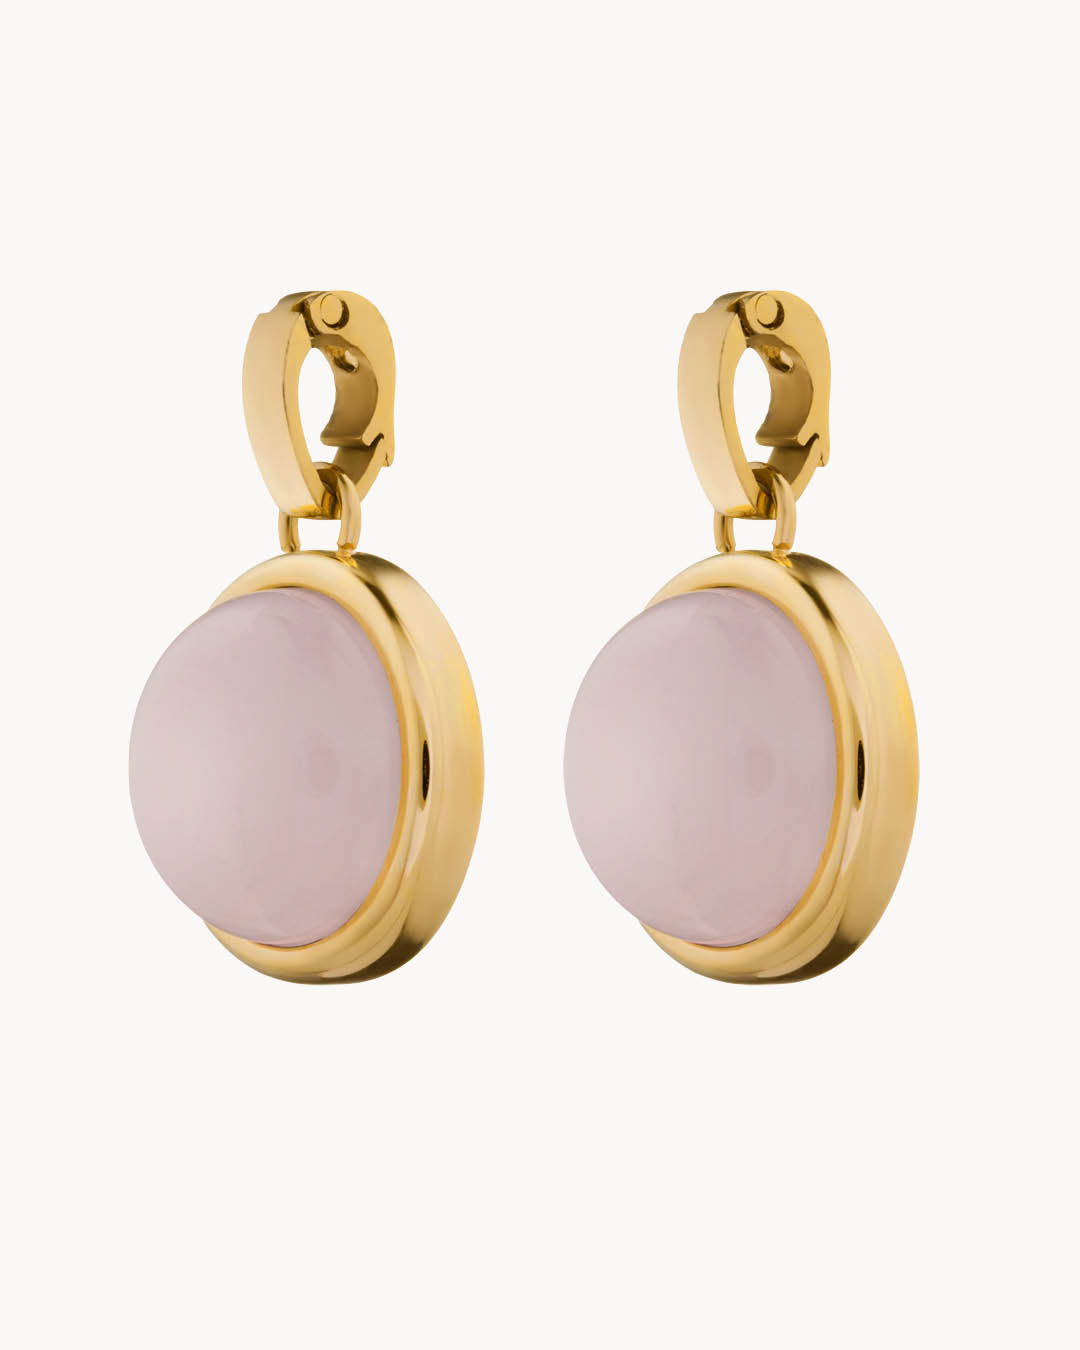 Kindness Stone Pink Quartz Signature Earring Pendants, Gold